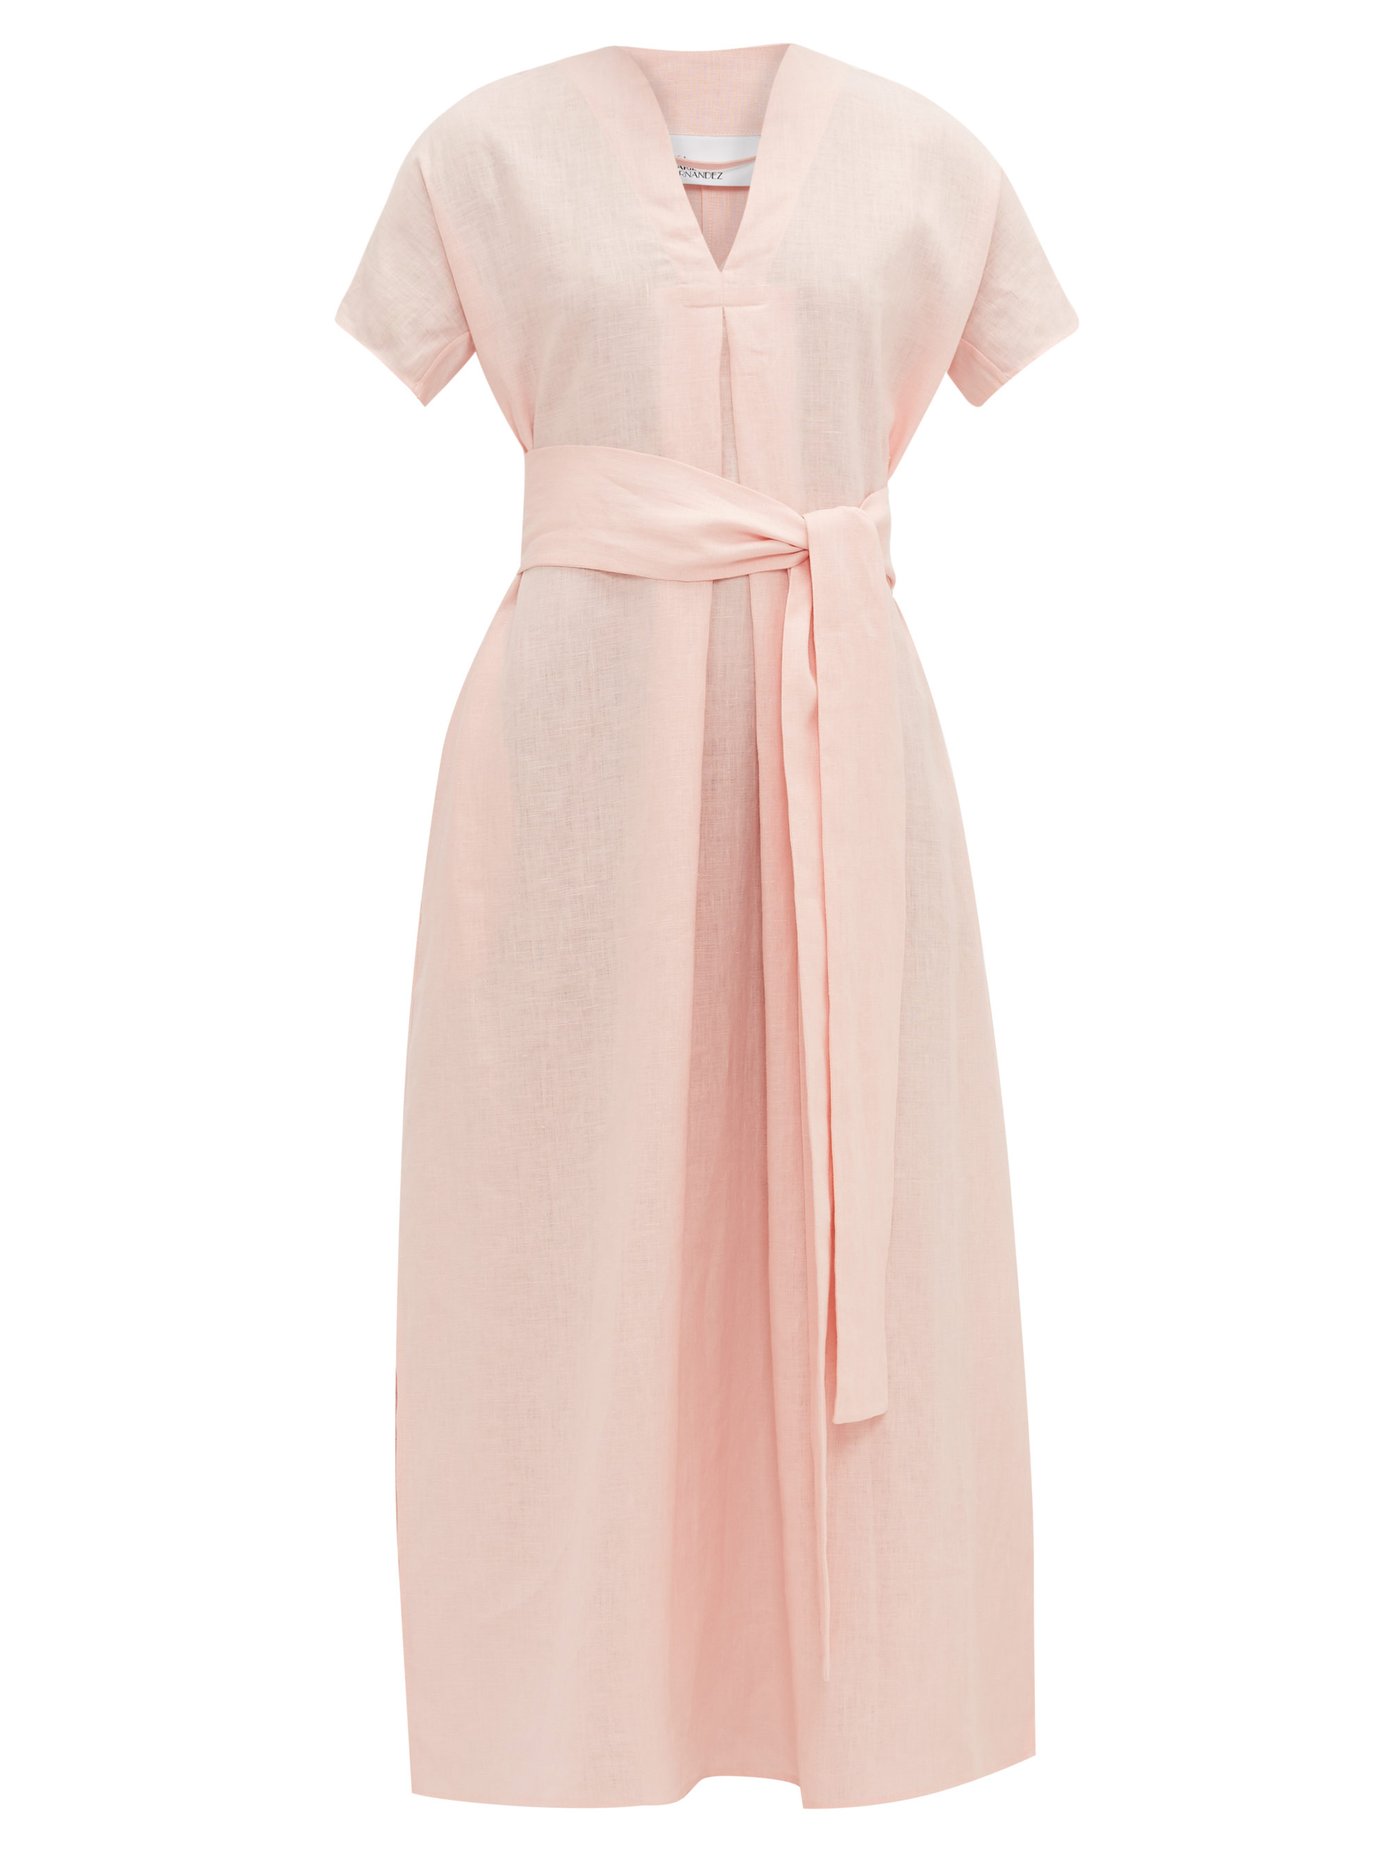 pink linen maxi dress